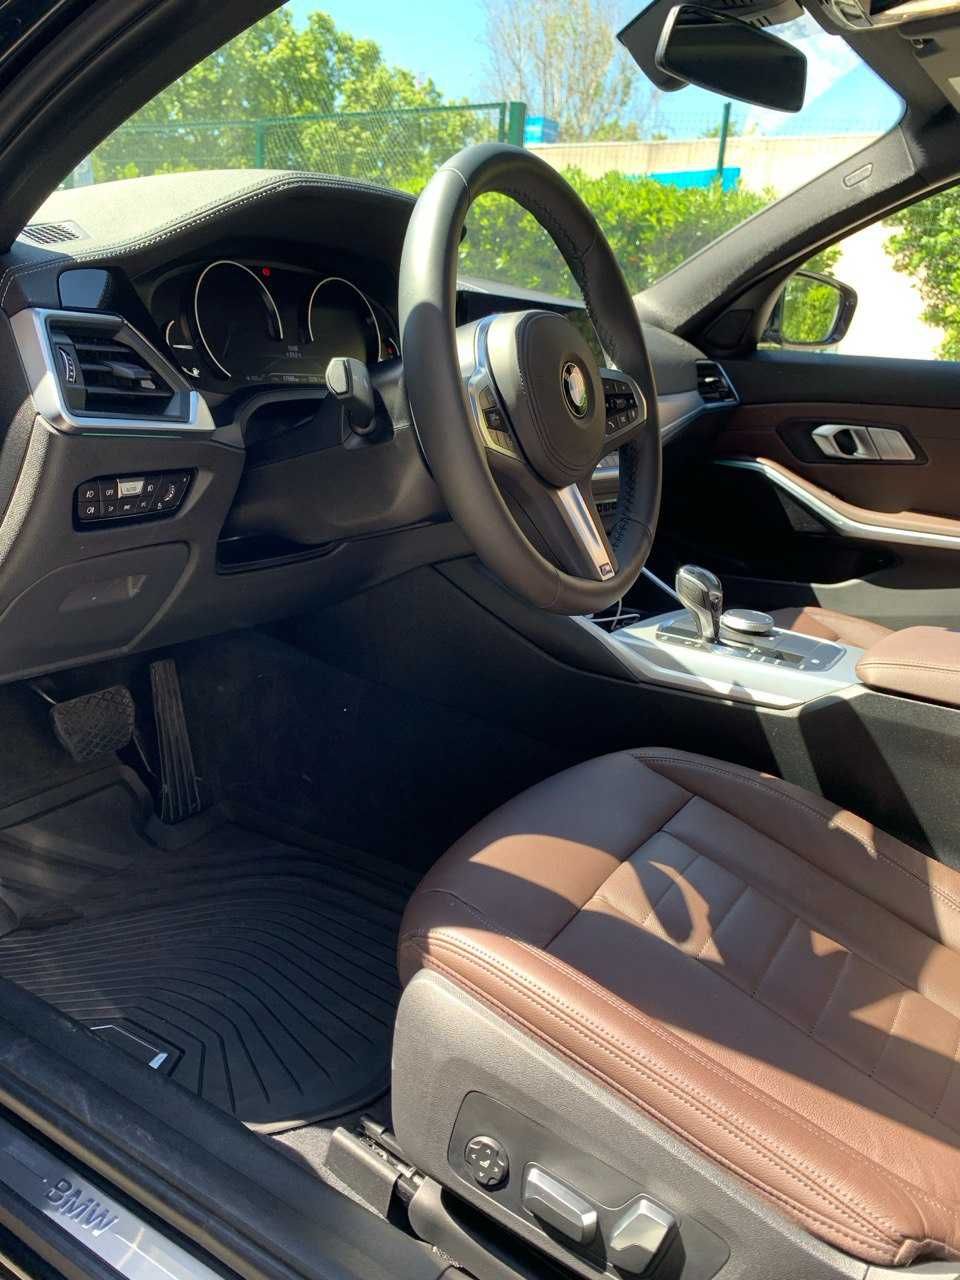 BMW 330i G20 2019 como novo